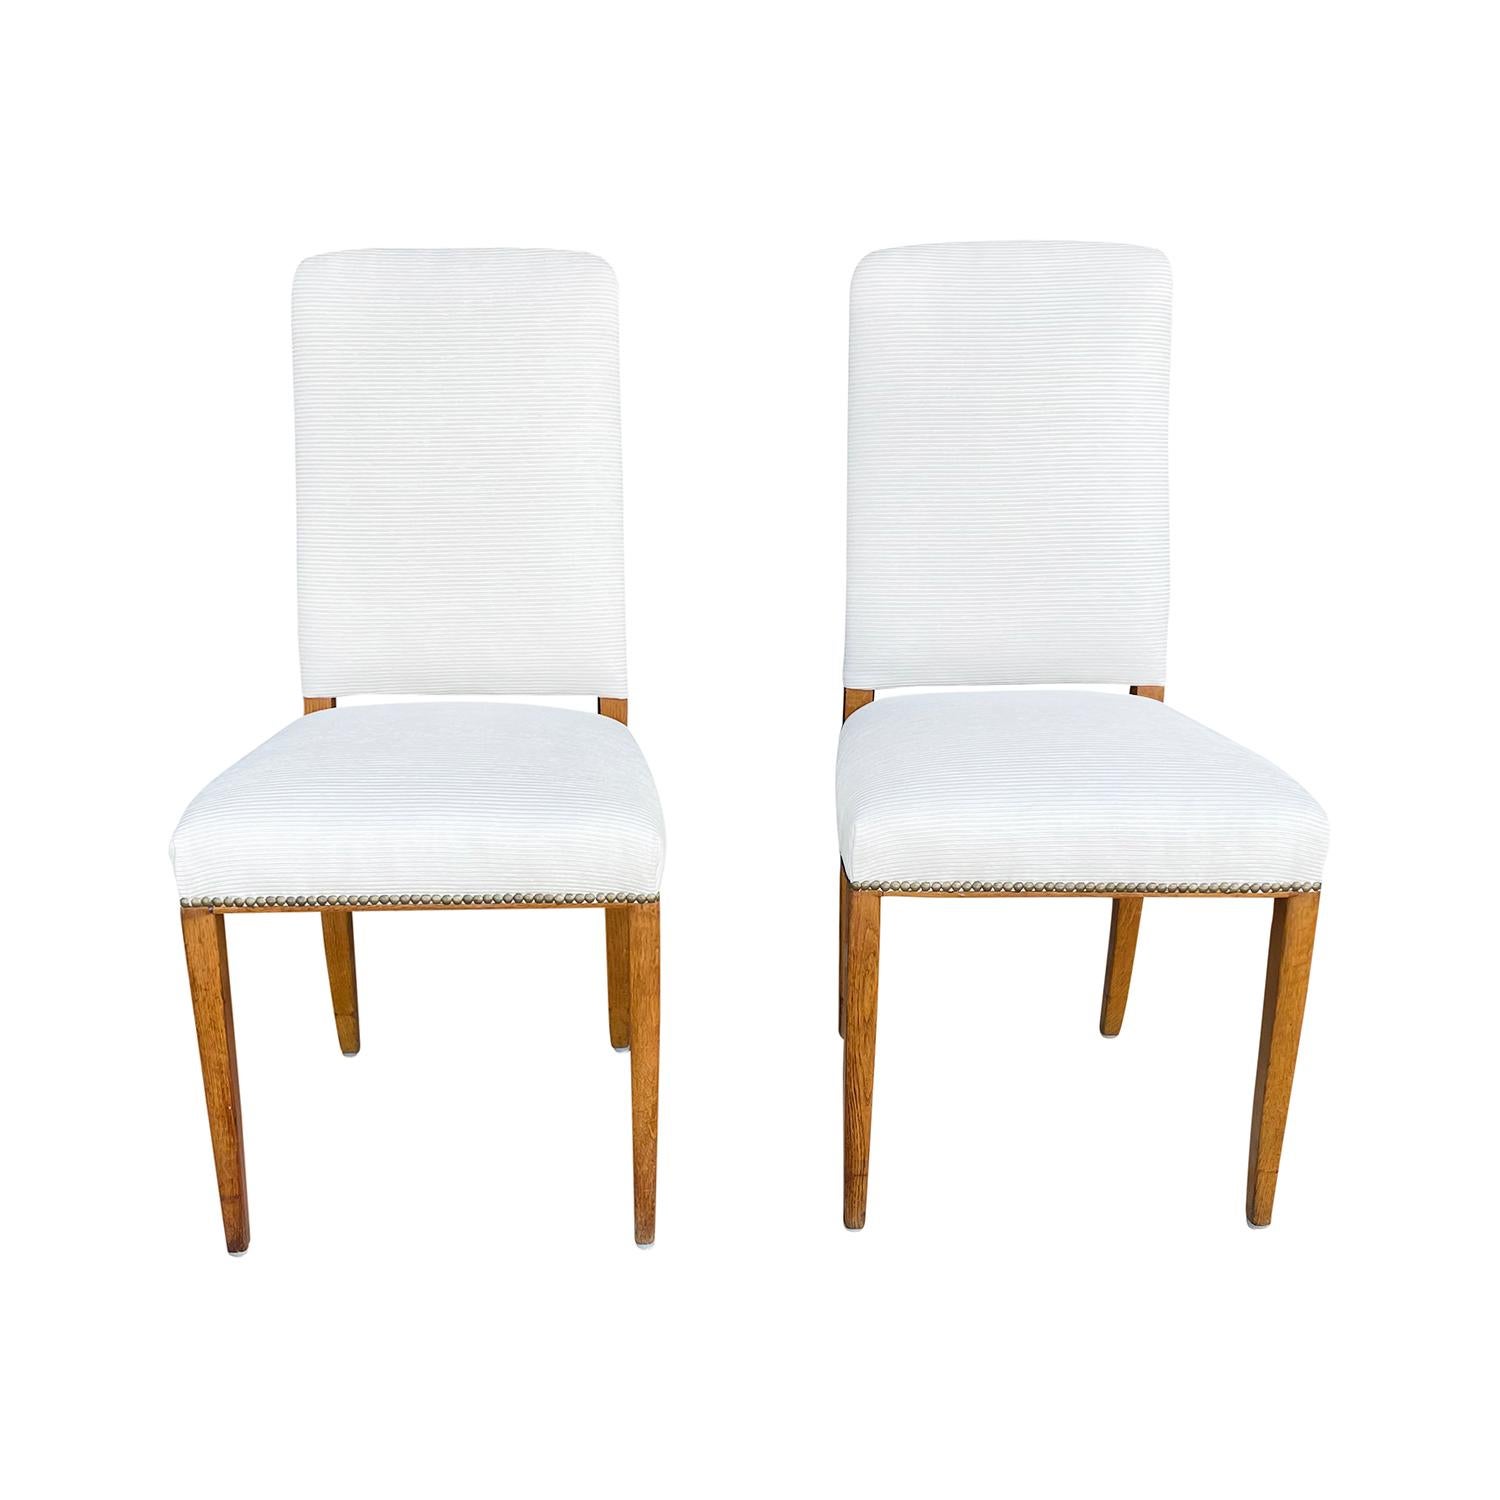 Ein schwedisches Paar Esstischstühle aus handgefertigtem Birkenholz, entworfen von Carl Malmsten und hergestellt von Möbel Komponerad AV, in gutem Zustand. Die skandinavischen Beistell- und Eckstühle sind mit detaillierten Messingnagelköpfen